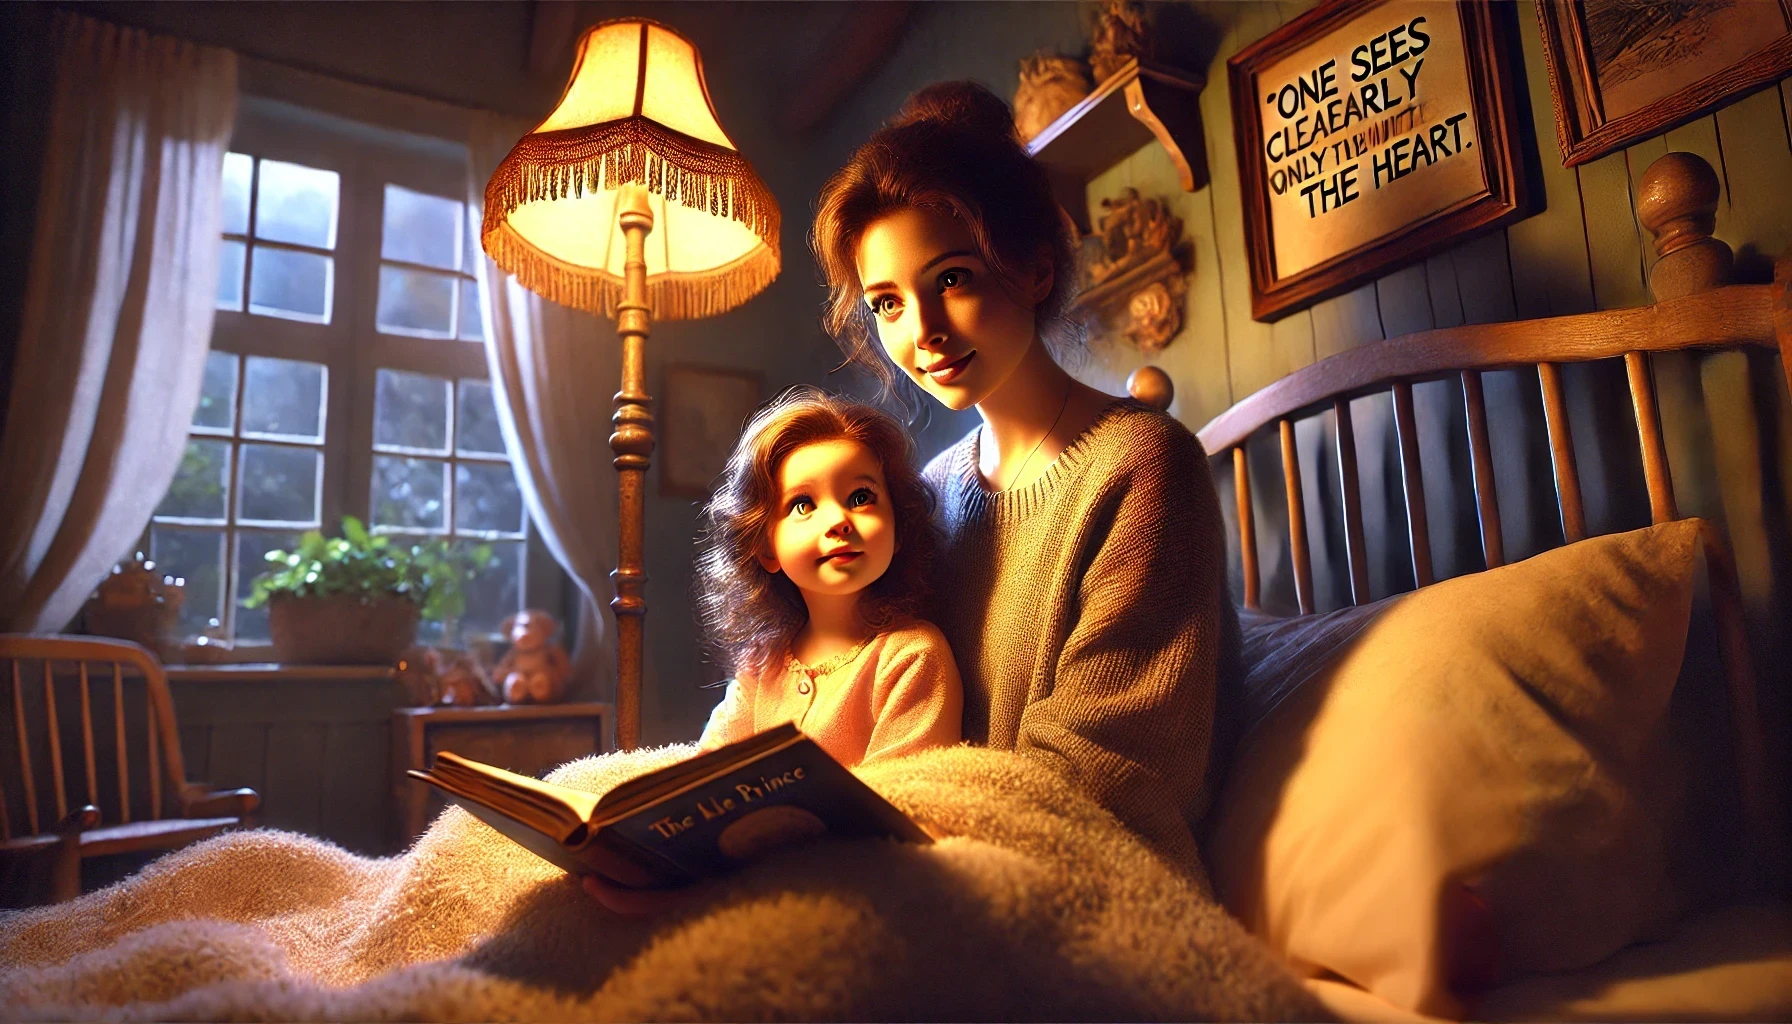 Das mit KI generierte Bild zeigt ein gemütliches Kinderzimmer, das in warmes Licht von einer altmodischen Nachttischlampe getaucht ist, die weiche Schatten an die Wände wirft. Auf dem Bett sitzt ein kleines Mädchen, Natali, neben ihrer Mutter. Natali hat lockiges, braunes Haar und schaut mit großen, leuchtenden Augen in Richtung ihrer Mutter, die ihr lächelnd aus einem Buch vorliest. Auf dem Buchrücken ist der Titel "The Litle Prince" zu ahnen. Die Mutter hat ebenfalls braunes Haar und trägt einen gemütlichen Pullover. Im Hintergrund sind ein Fenster mit Vorhängen, Pflanzen auf der Fensterbank und ein Schild an der Wand mit der Aufschrift 'One sees clearly only with the heart' zu sehen.